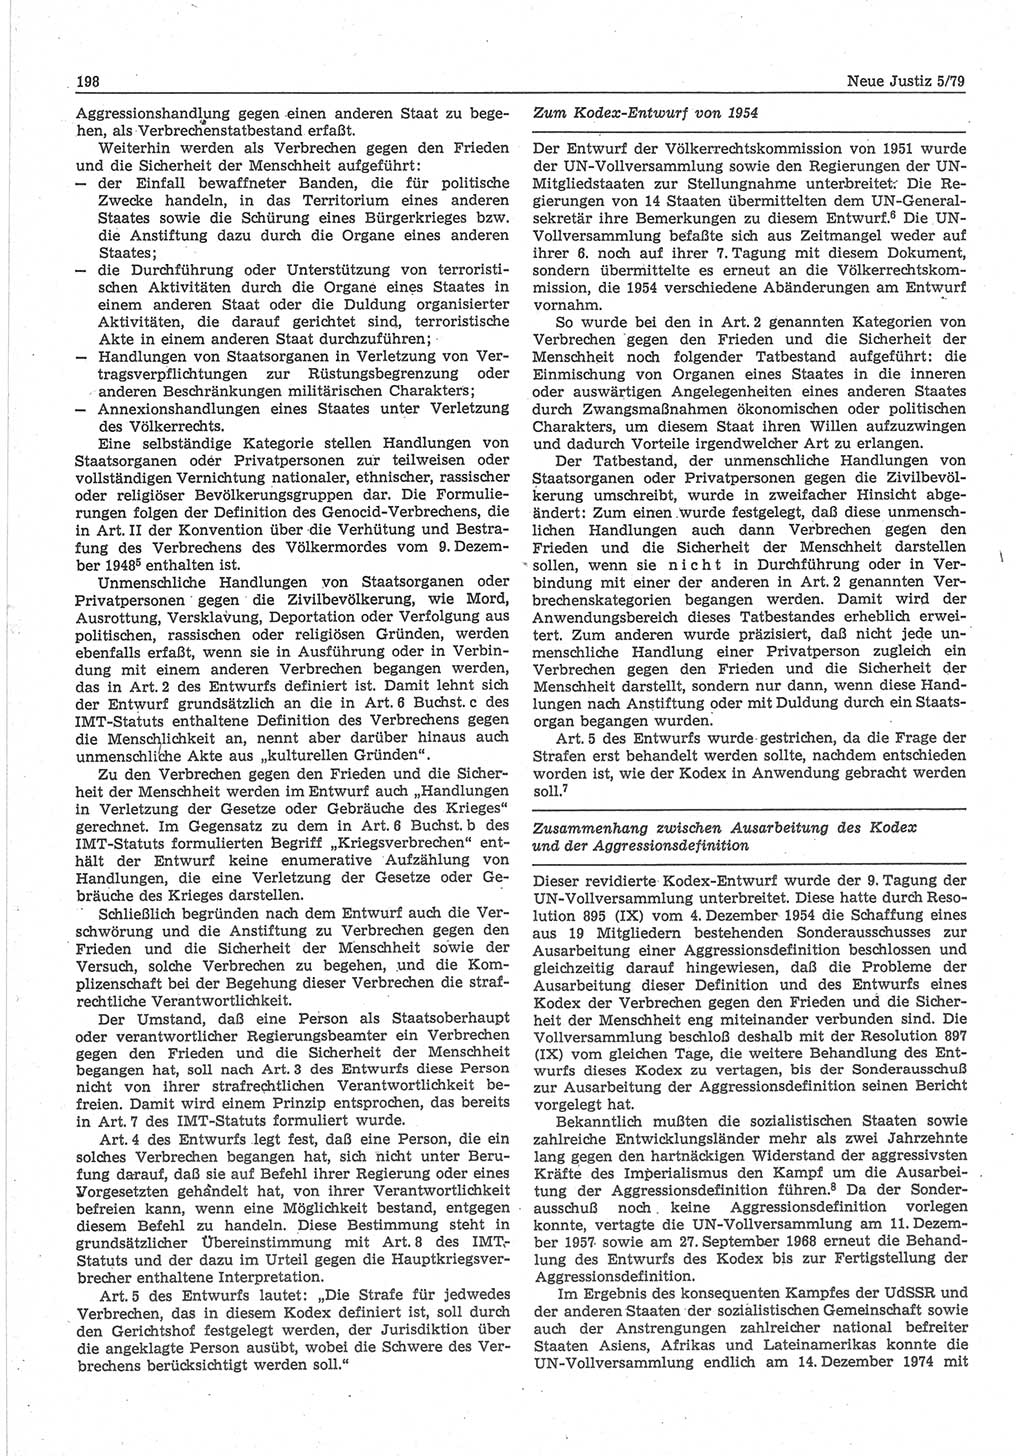 Neue Justiz (NJ), Zeitschrift für sozialistisches Recht und Gesetzlichkeit [Deutsche Demokratische Republik (DDR)], 33. Jahrgang 1979, Seite 198 (NJ DDR 1979, S. 198)